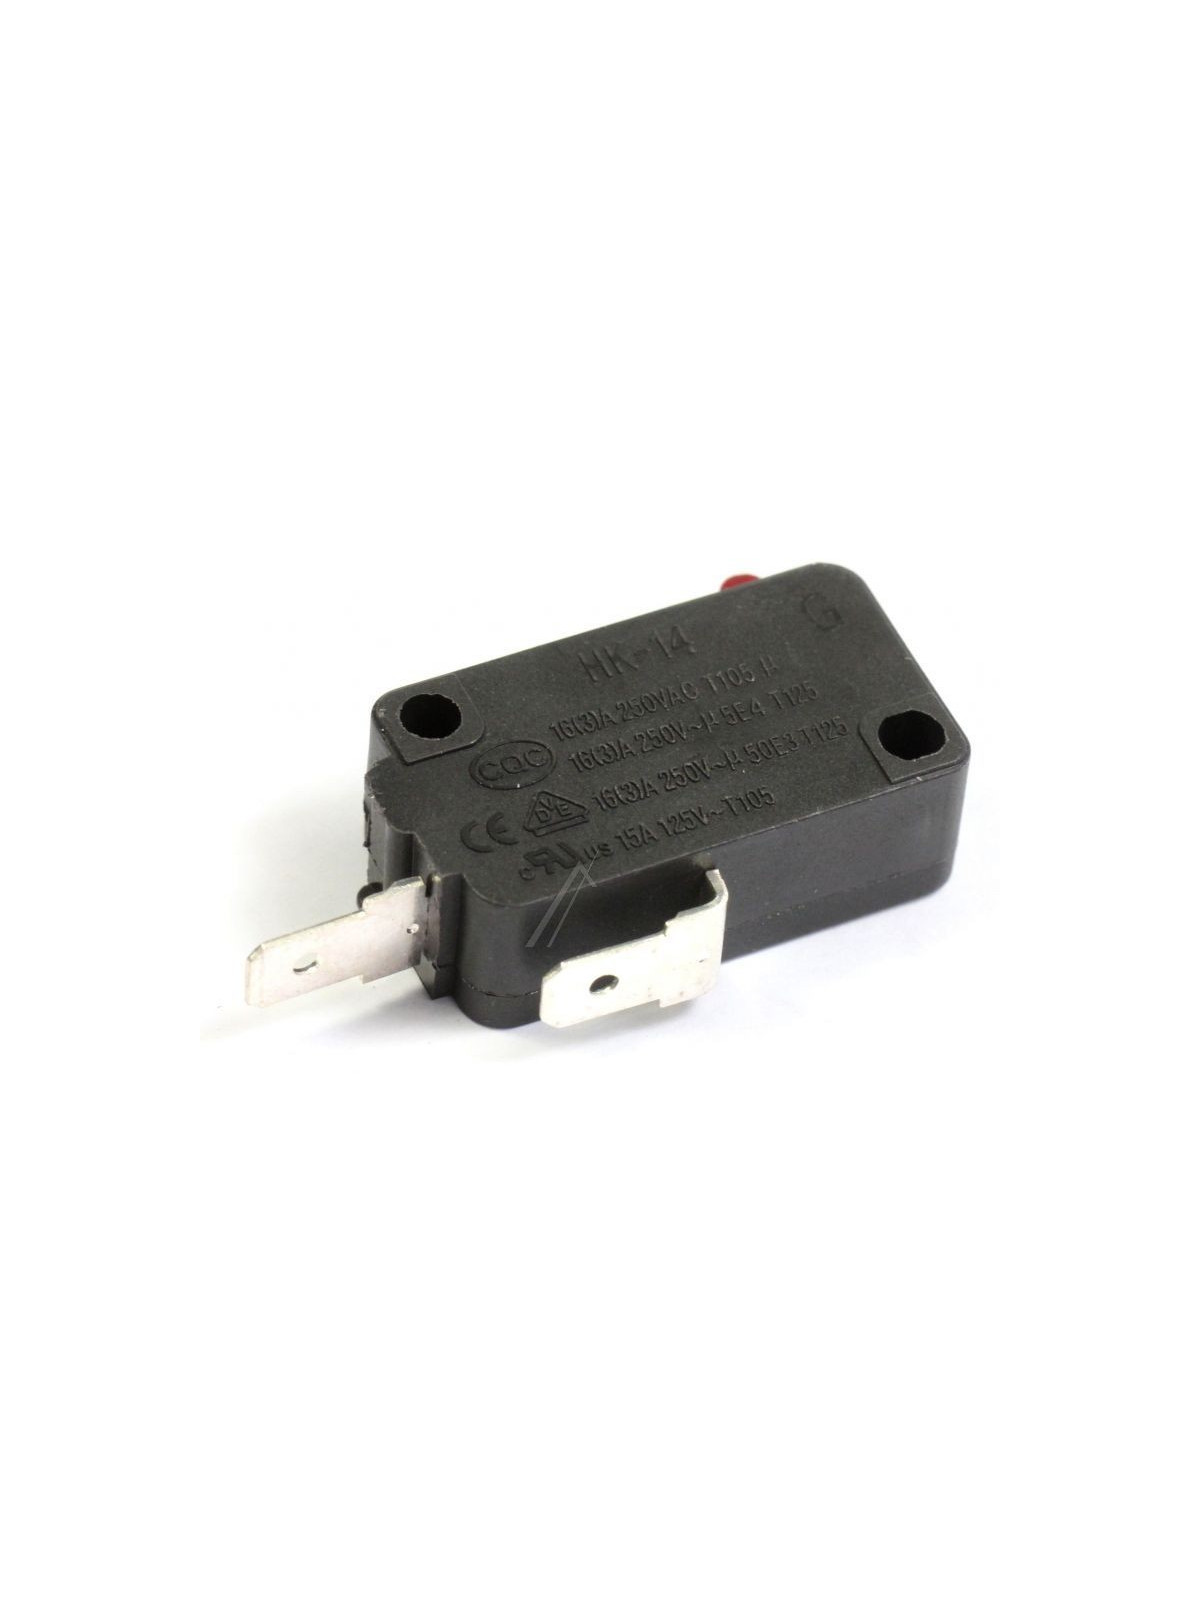 Interrupteur de porte Sharp R242 - Micro-ondes